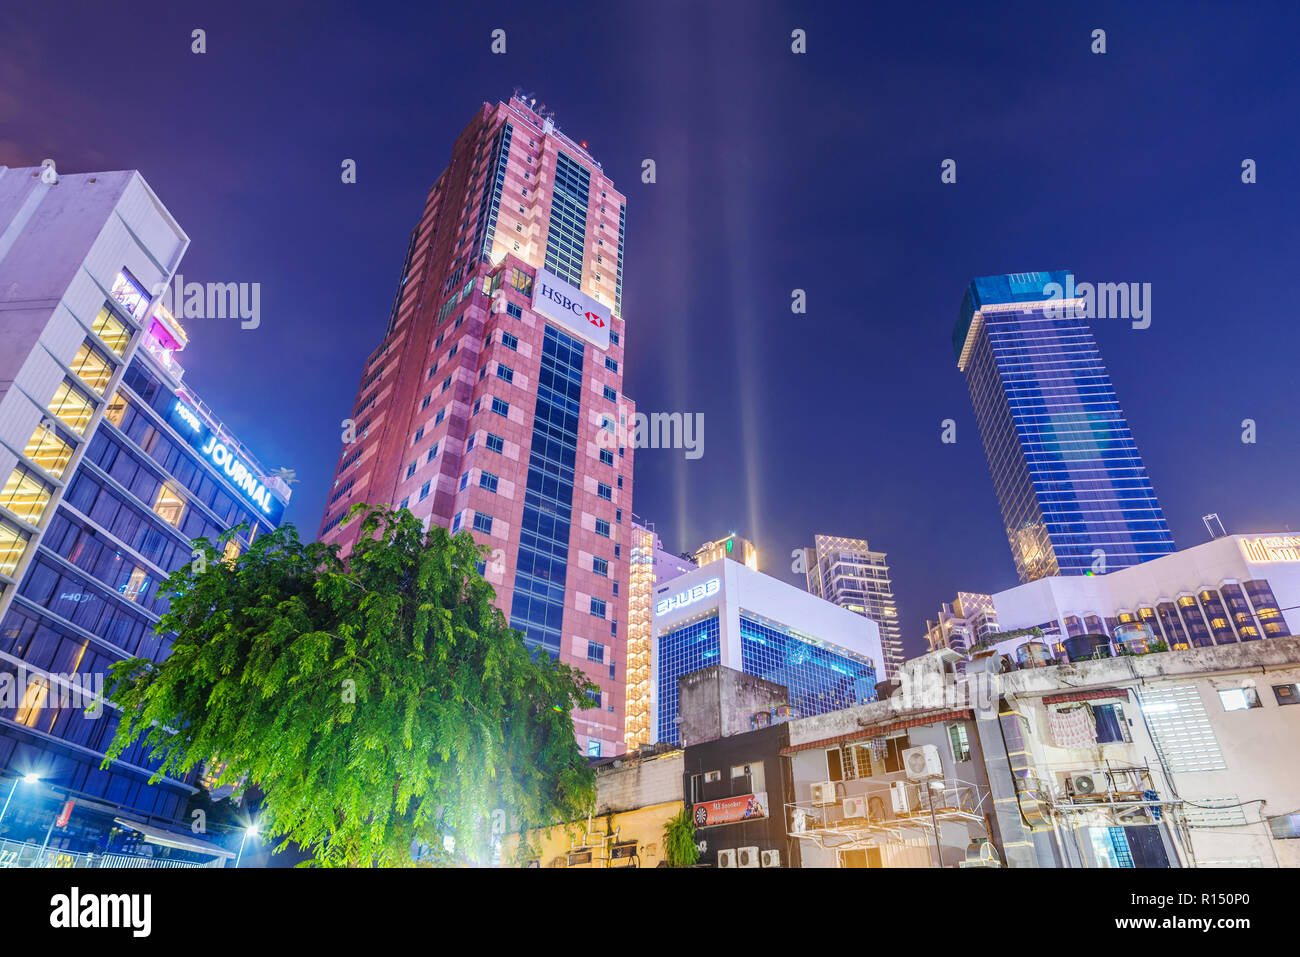 KUALA LUMPUR, Malesia - 23 Luglio: vista notturna di grattacieli moderni edifici nell'area del centro cittadino nei pressi di Bukit Bintang sulla luglio 23, 2018 a Kuala Lumpur Foto Stock